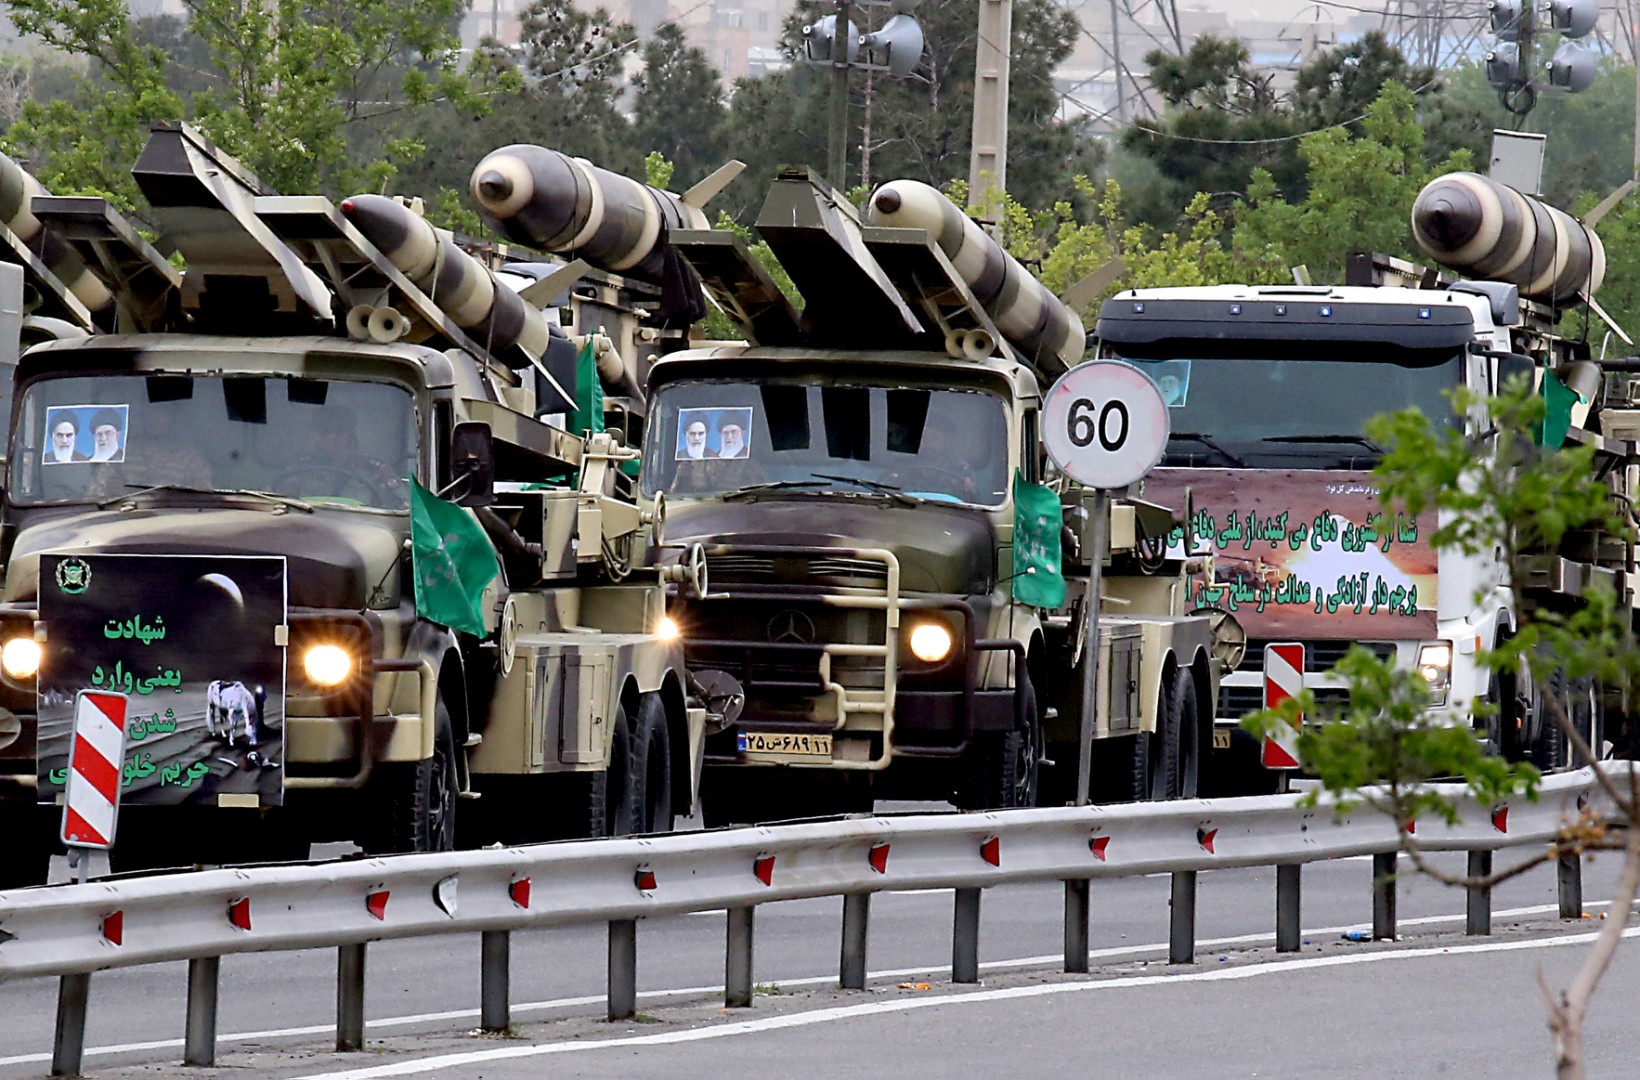 foto muestra convoy militar en irán en 2019, no camiones iraníes cruzando de irak a siria en 2024